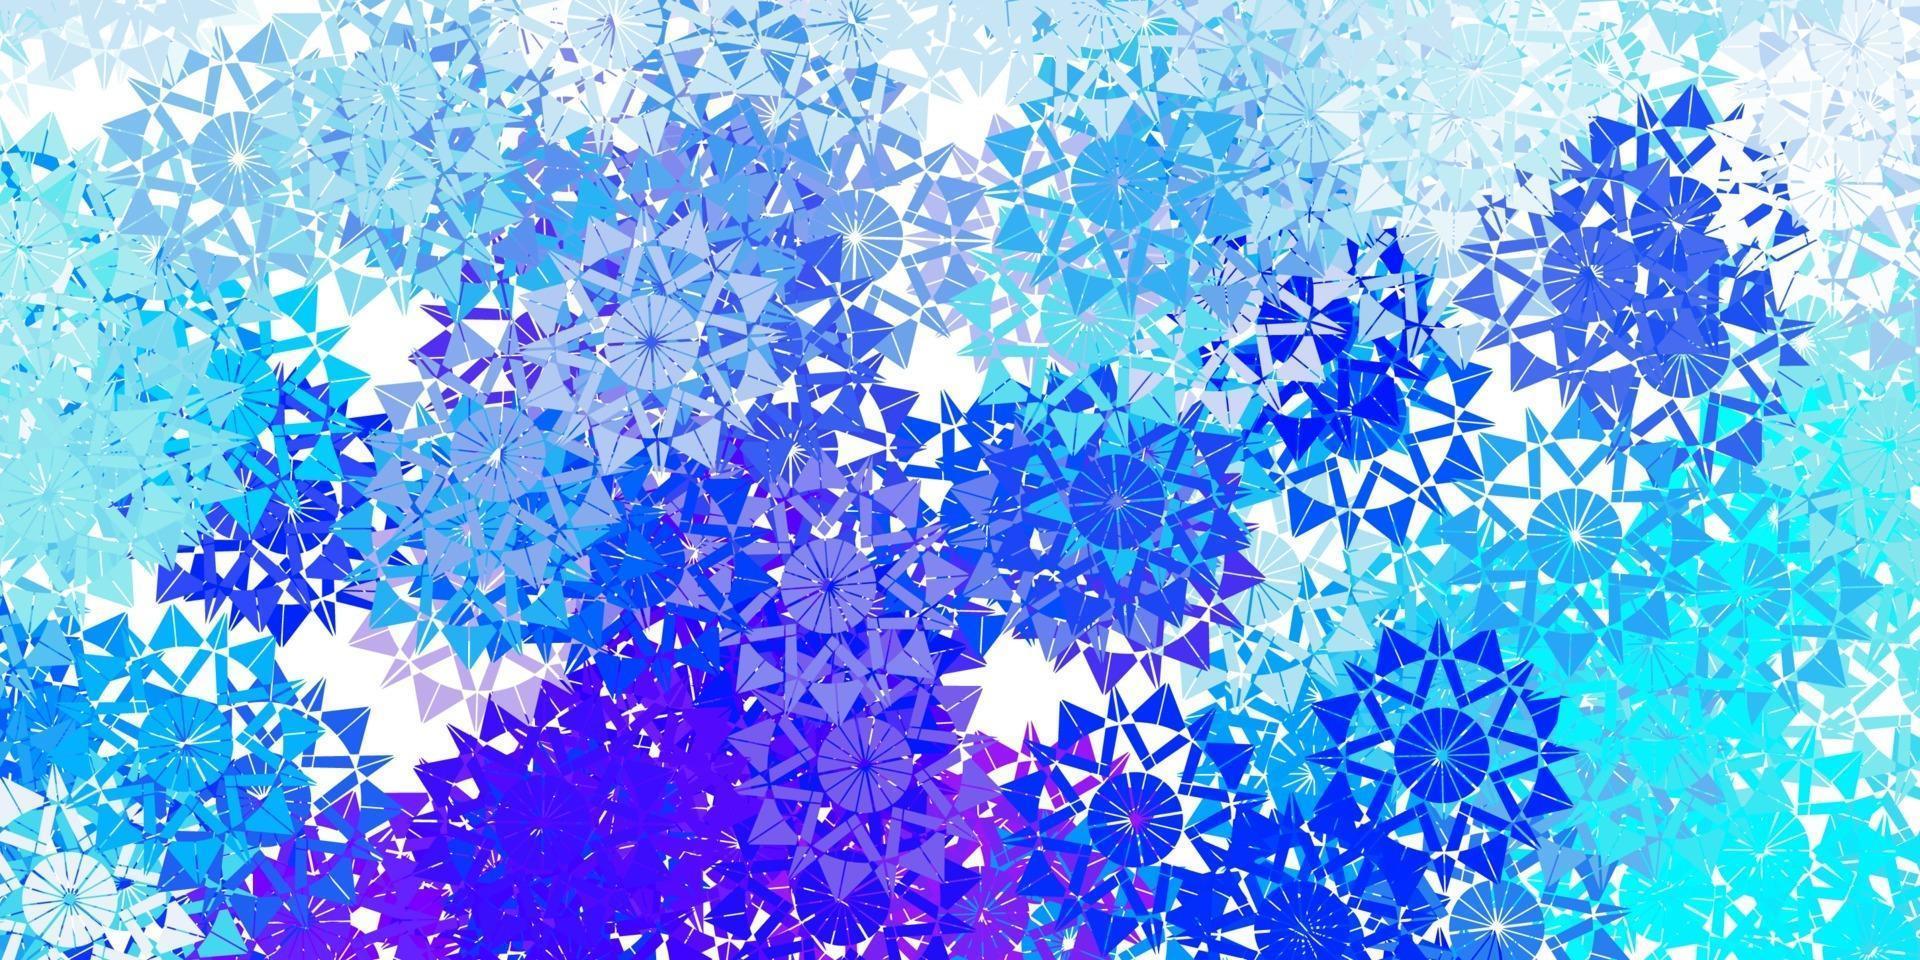 ljusrosa, blå vektorlayout med vackra snöflingor. vektor